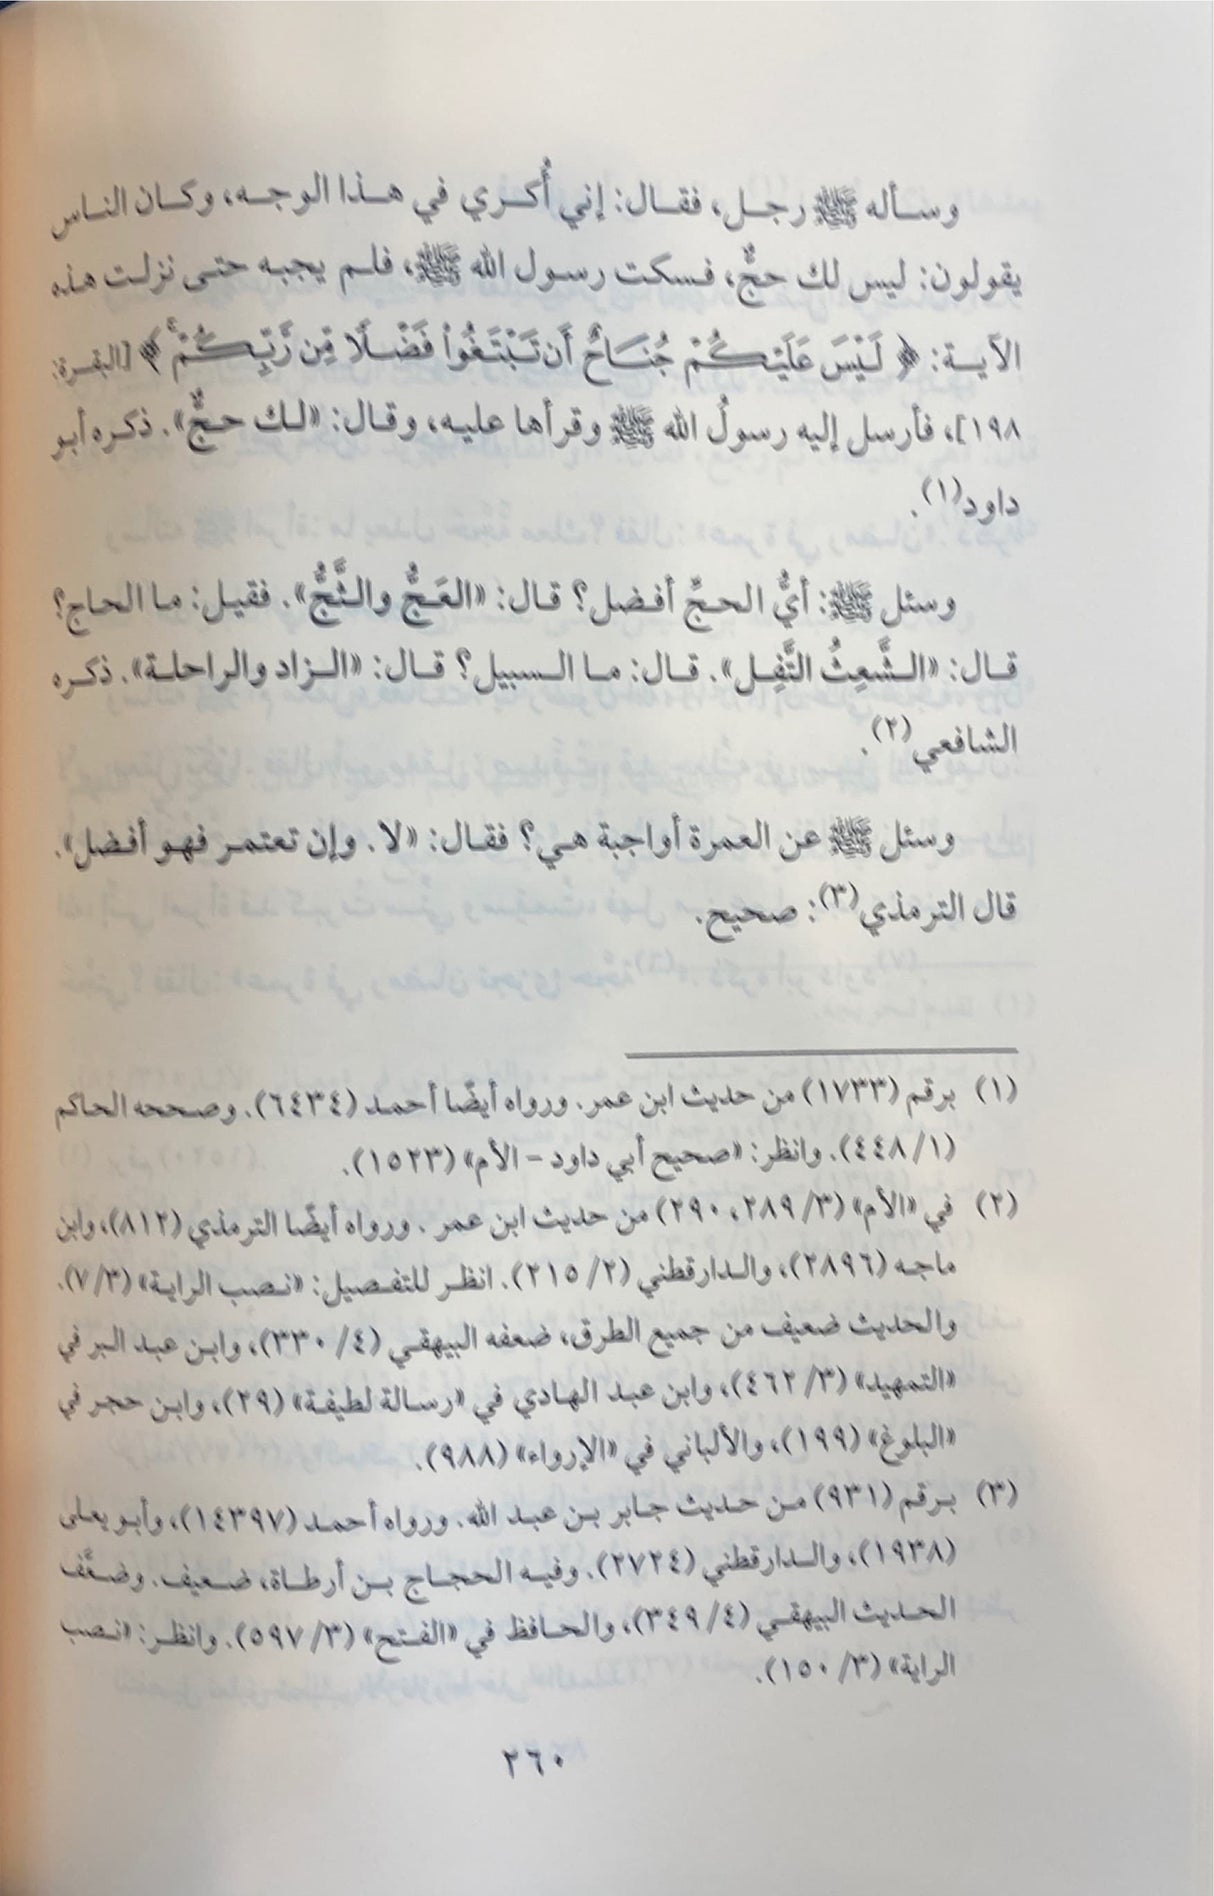 اعلام الموقعين عن رب العالمين Ilaamul Muwaqieen (6 Volume Set)(Hazm)